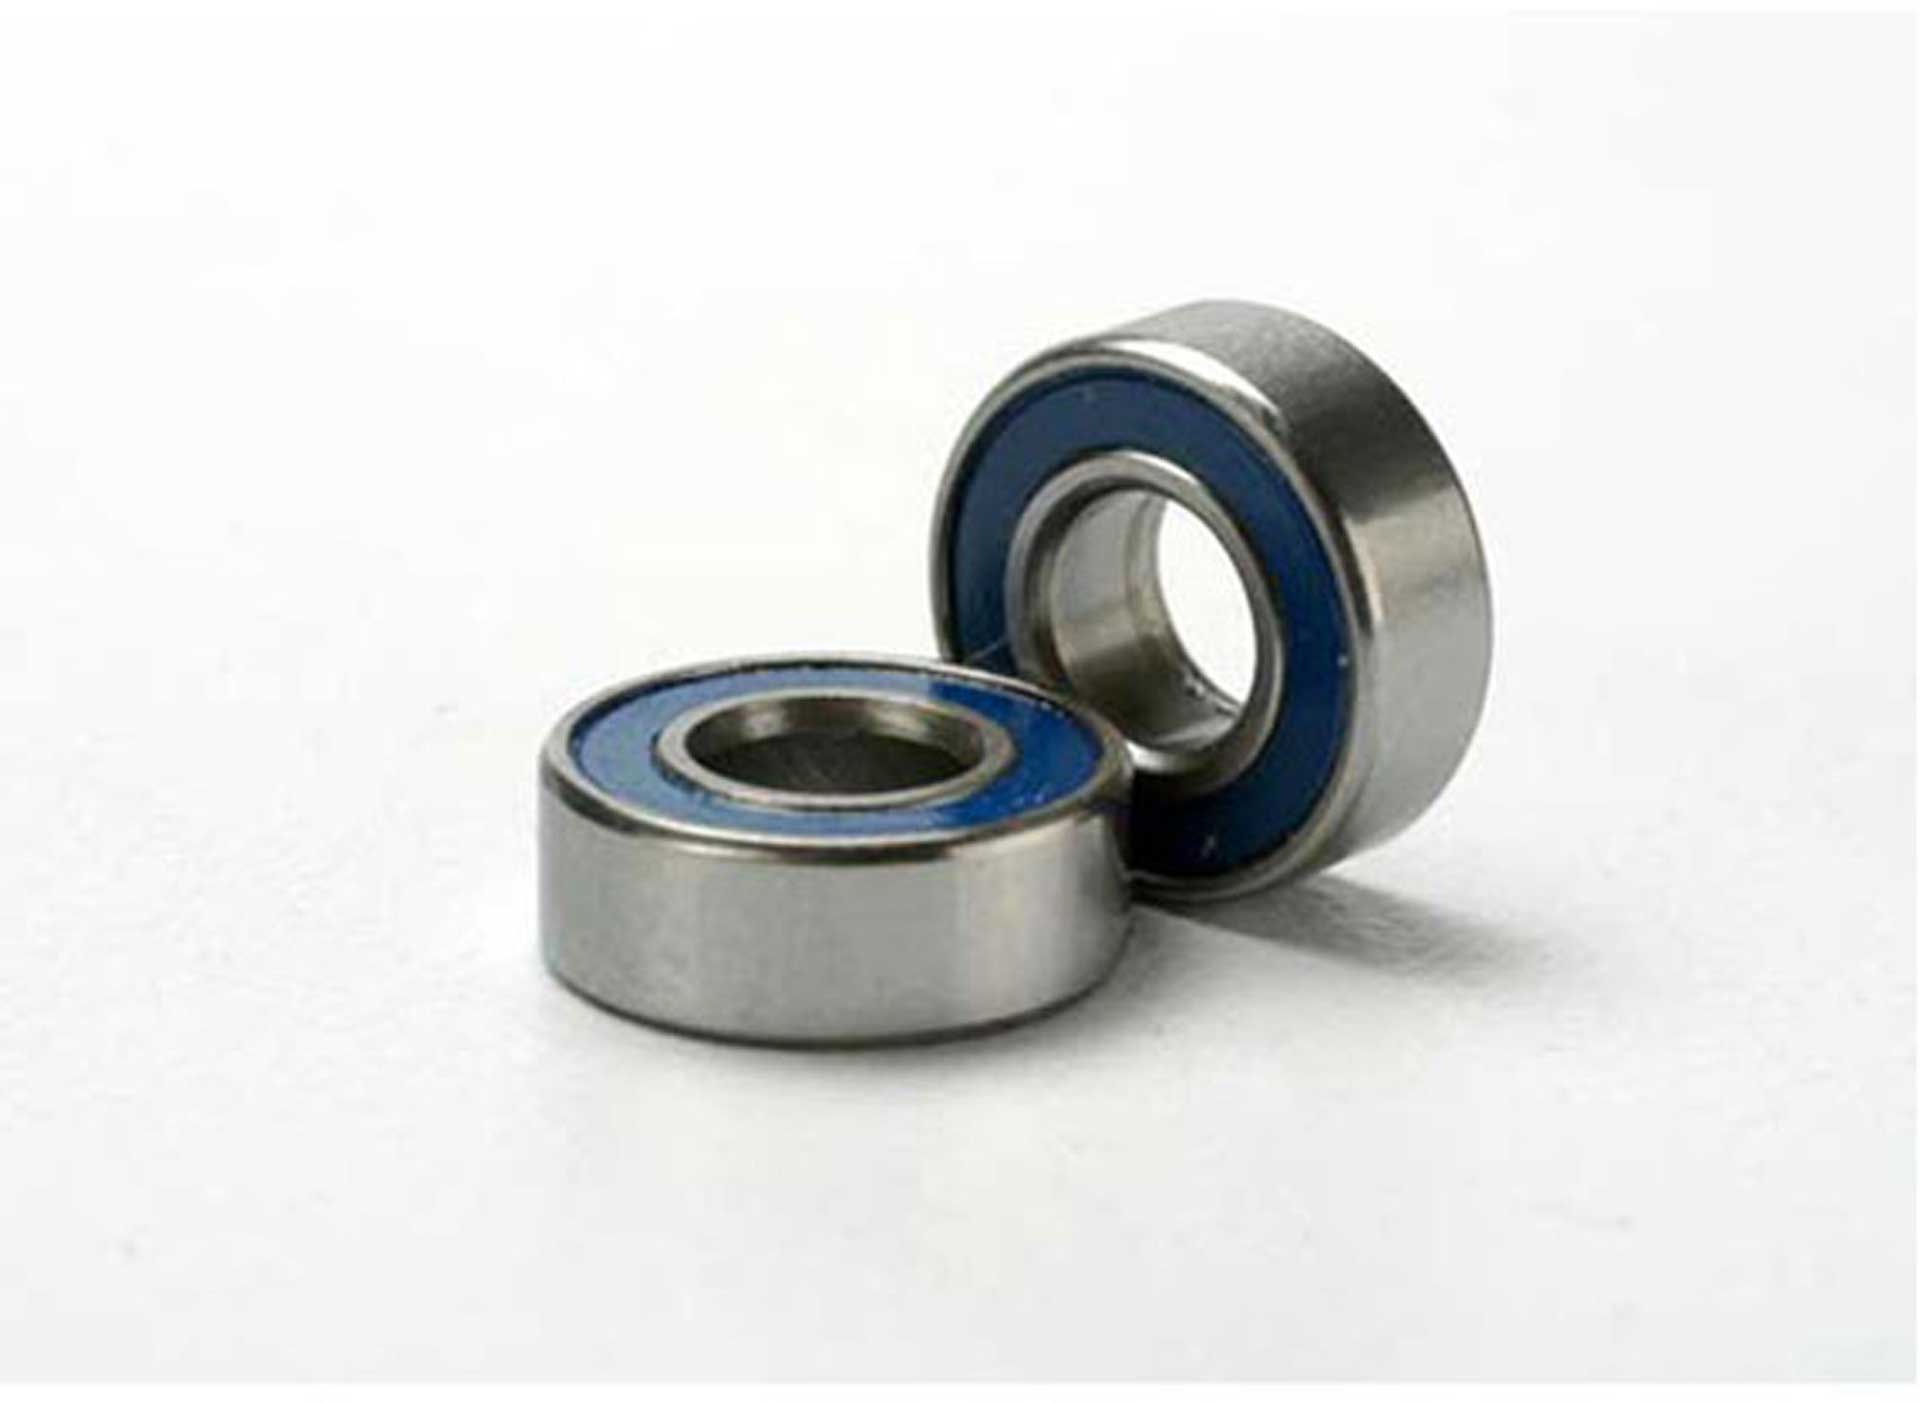 TRAXXAS Ball bearing, blue rubber seal (5x11x4mm) (2)